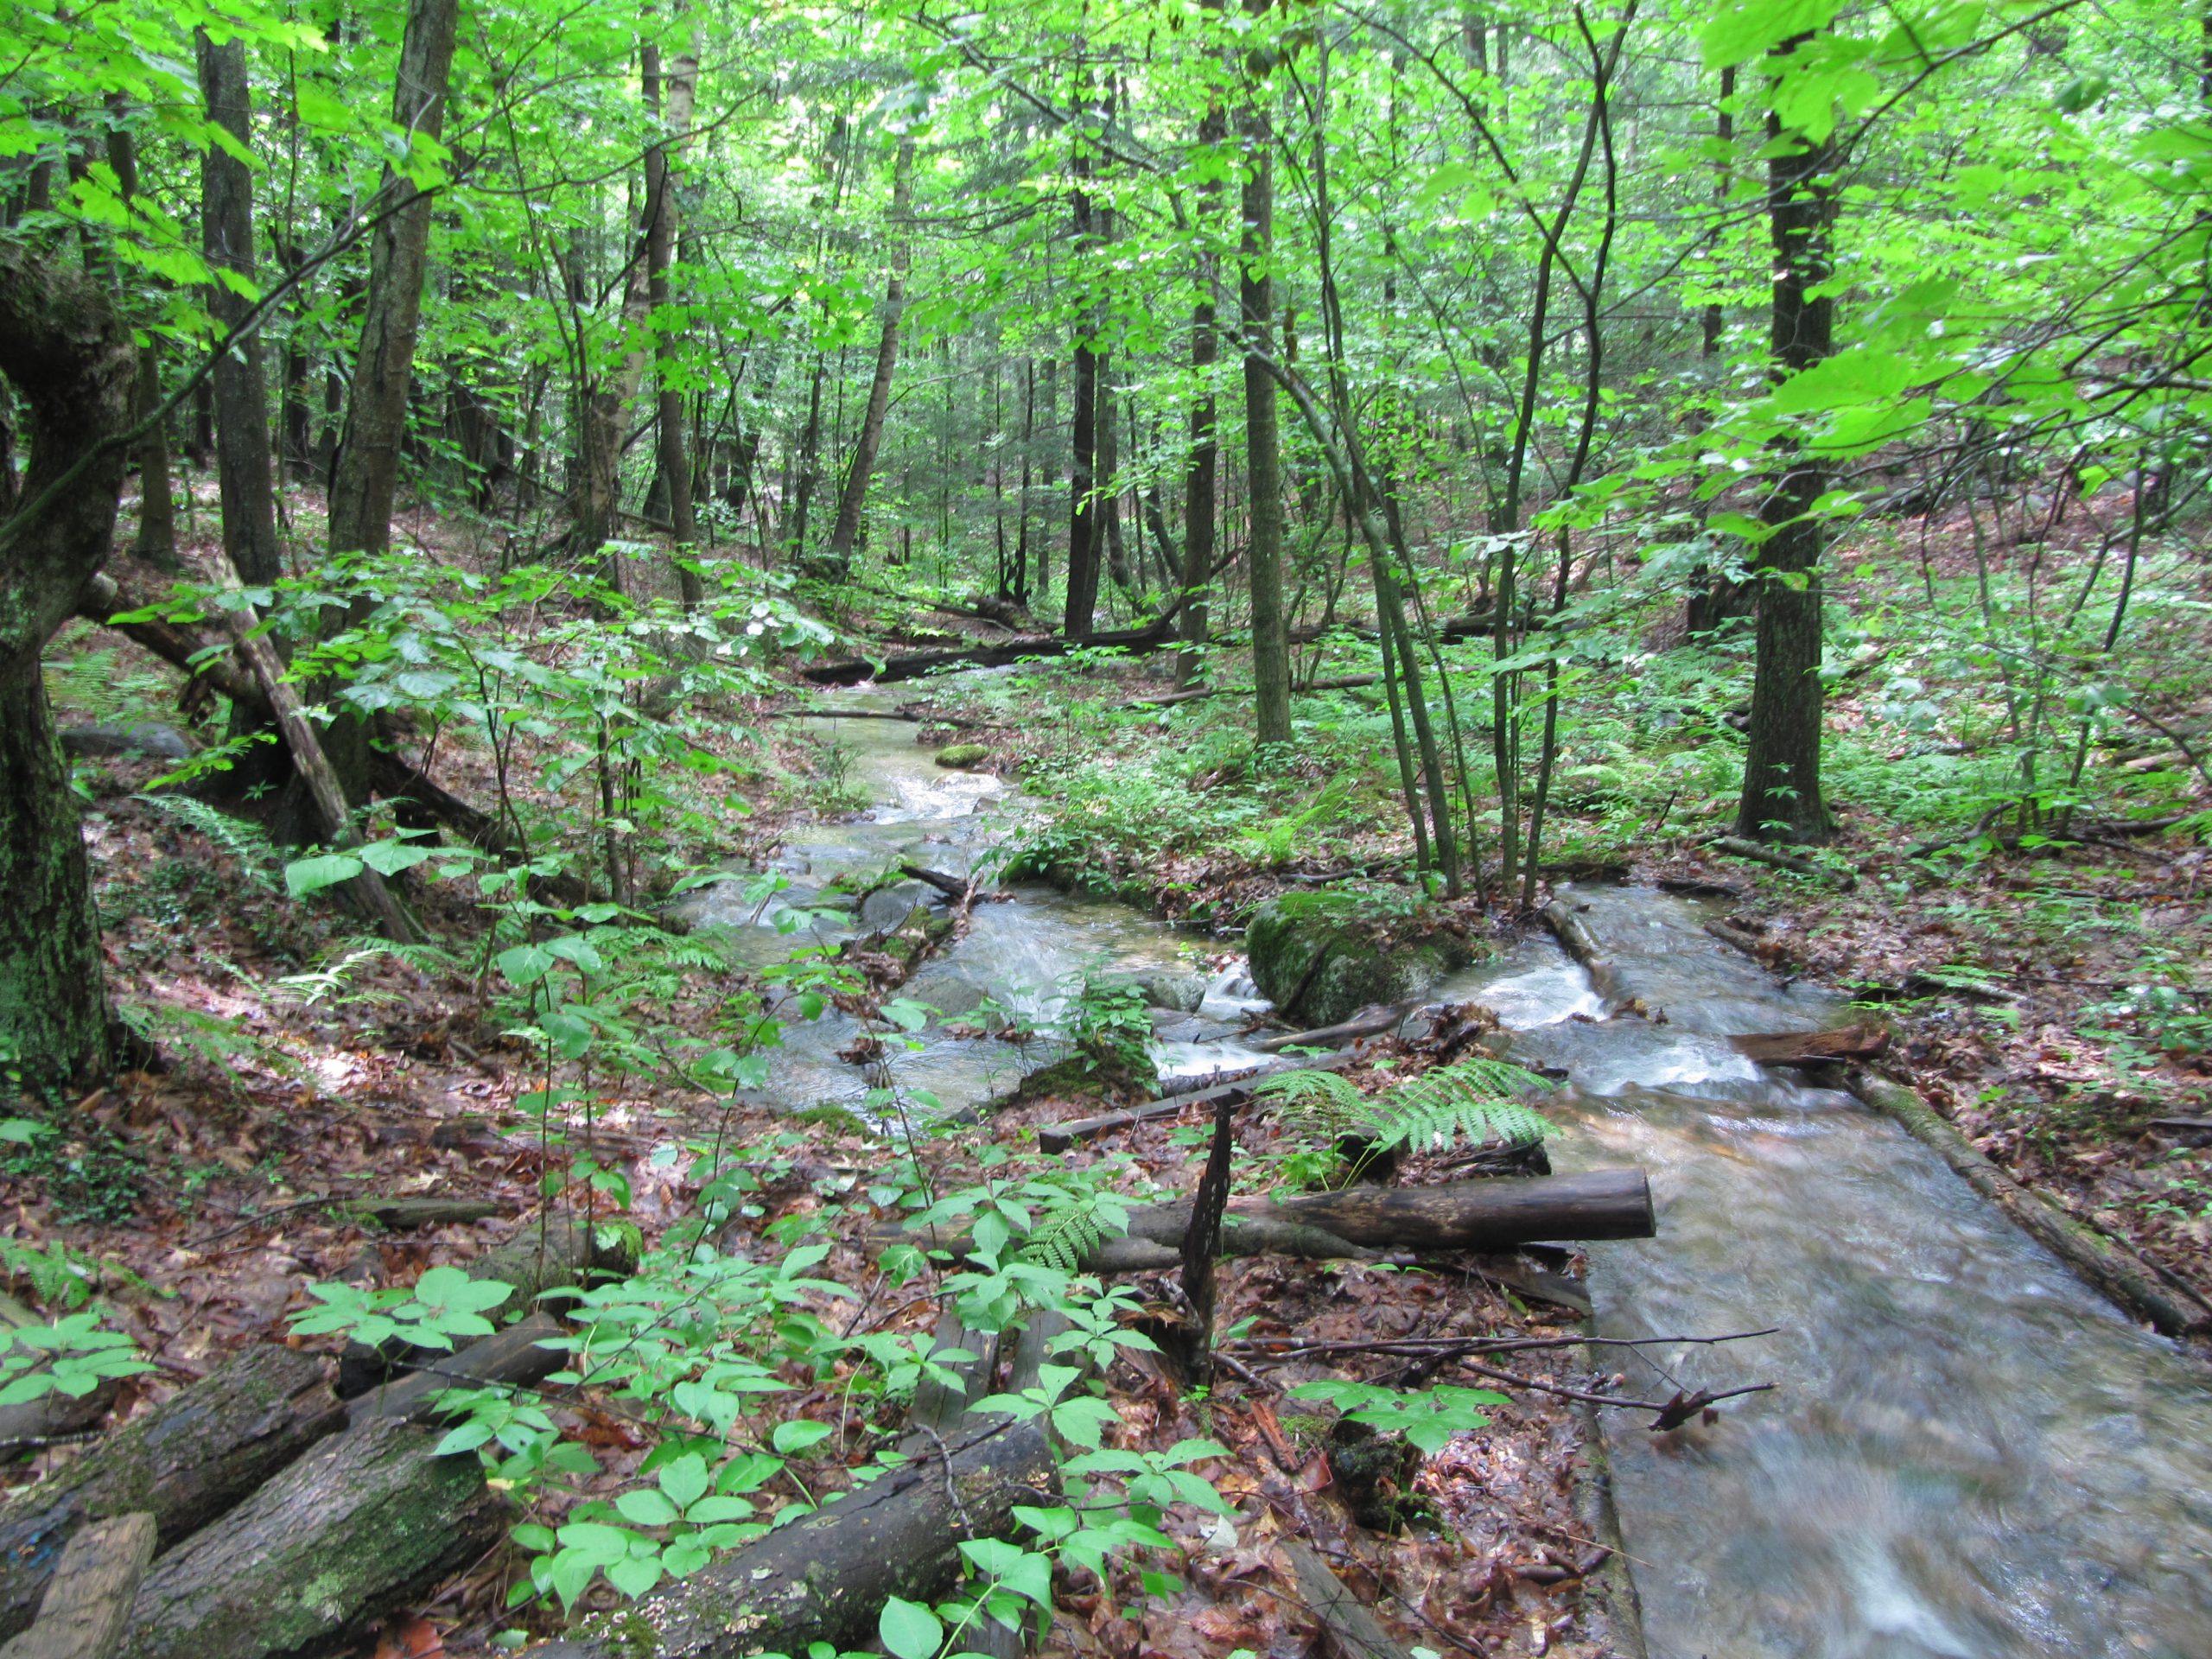 A brook runs through a forest